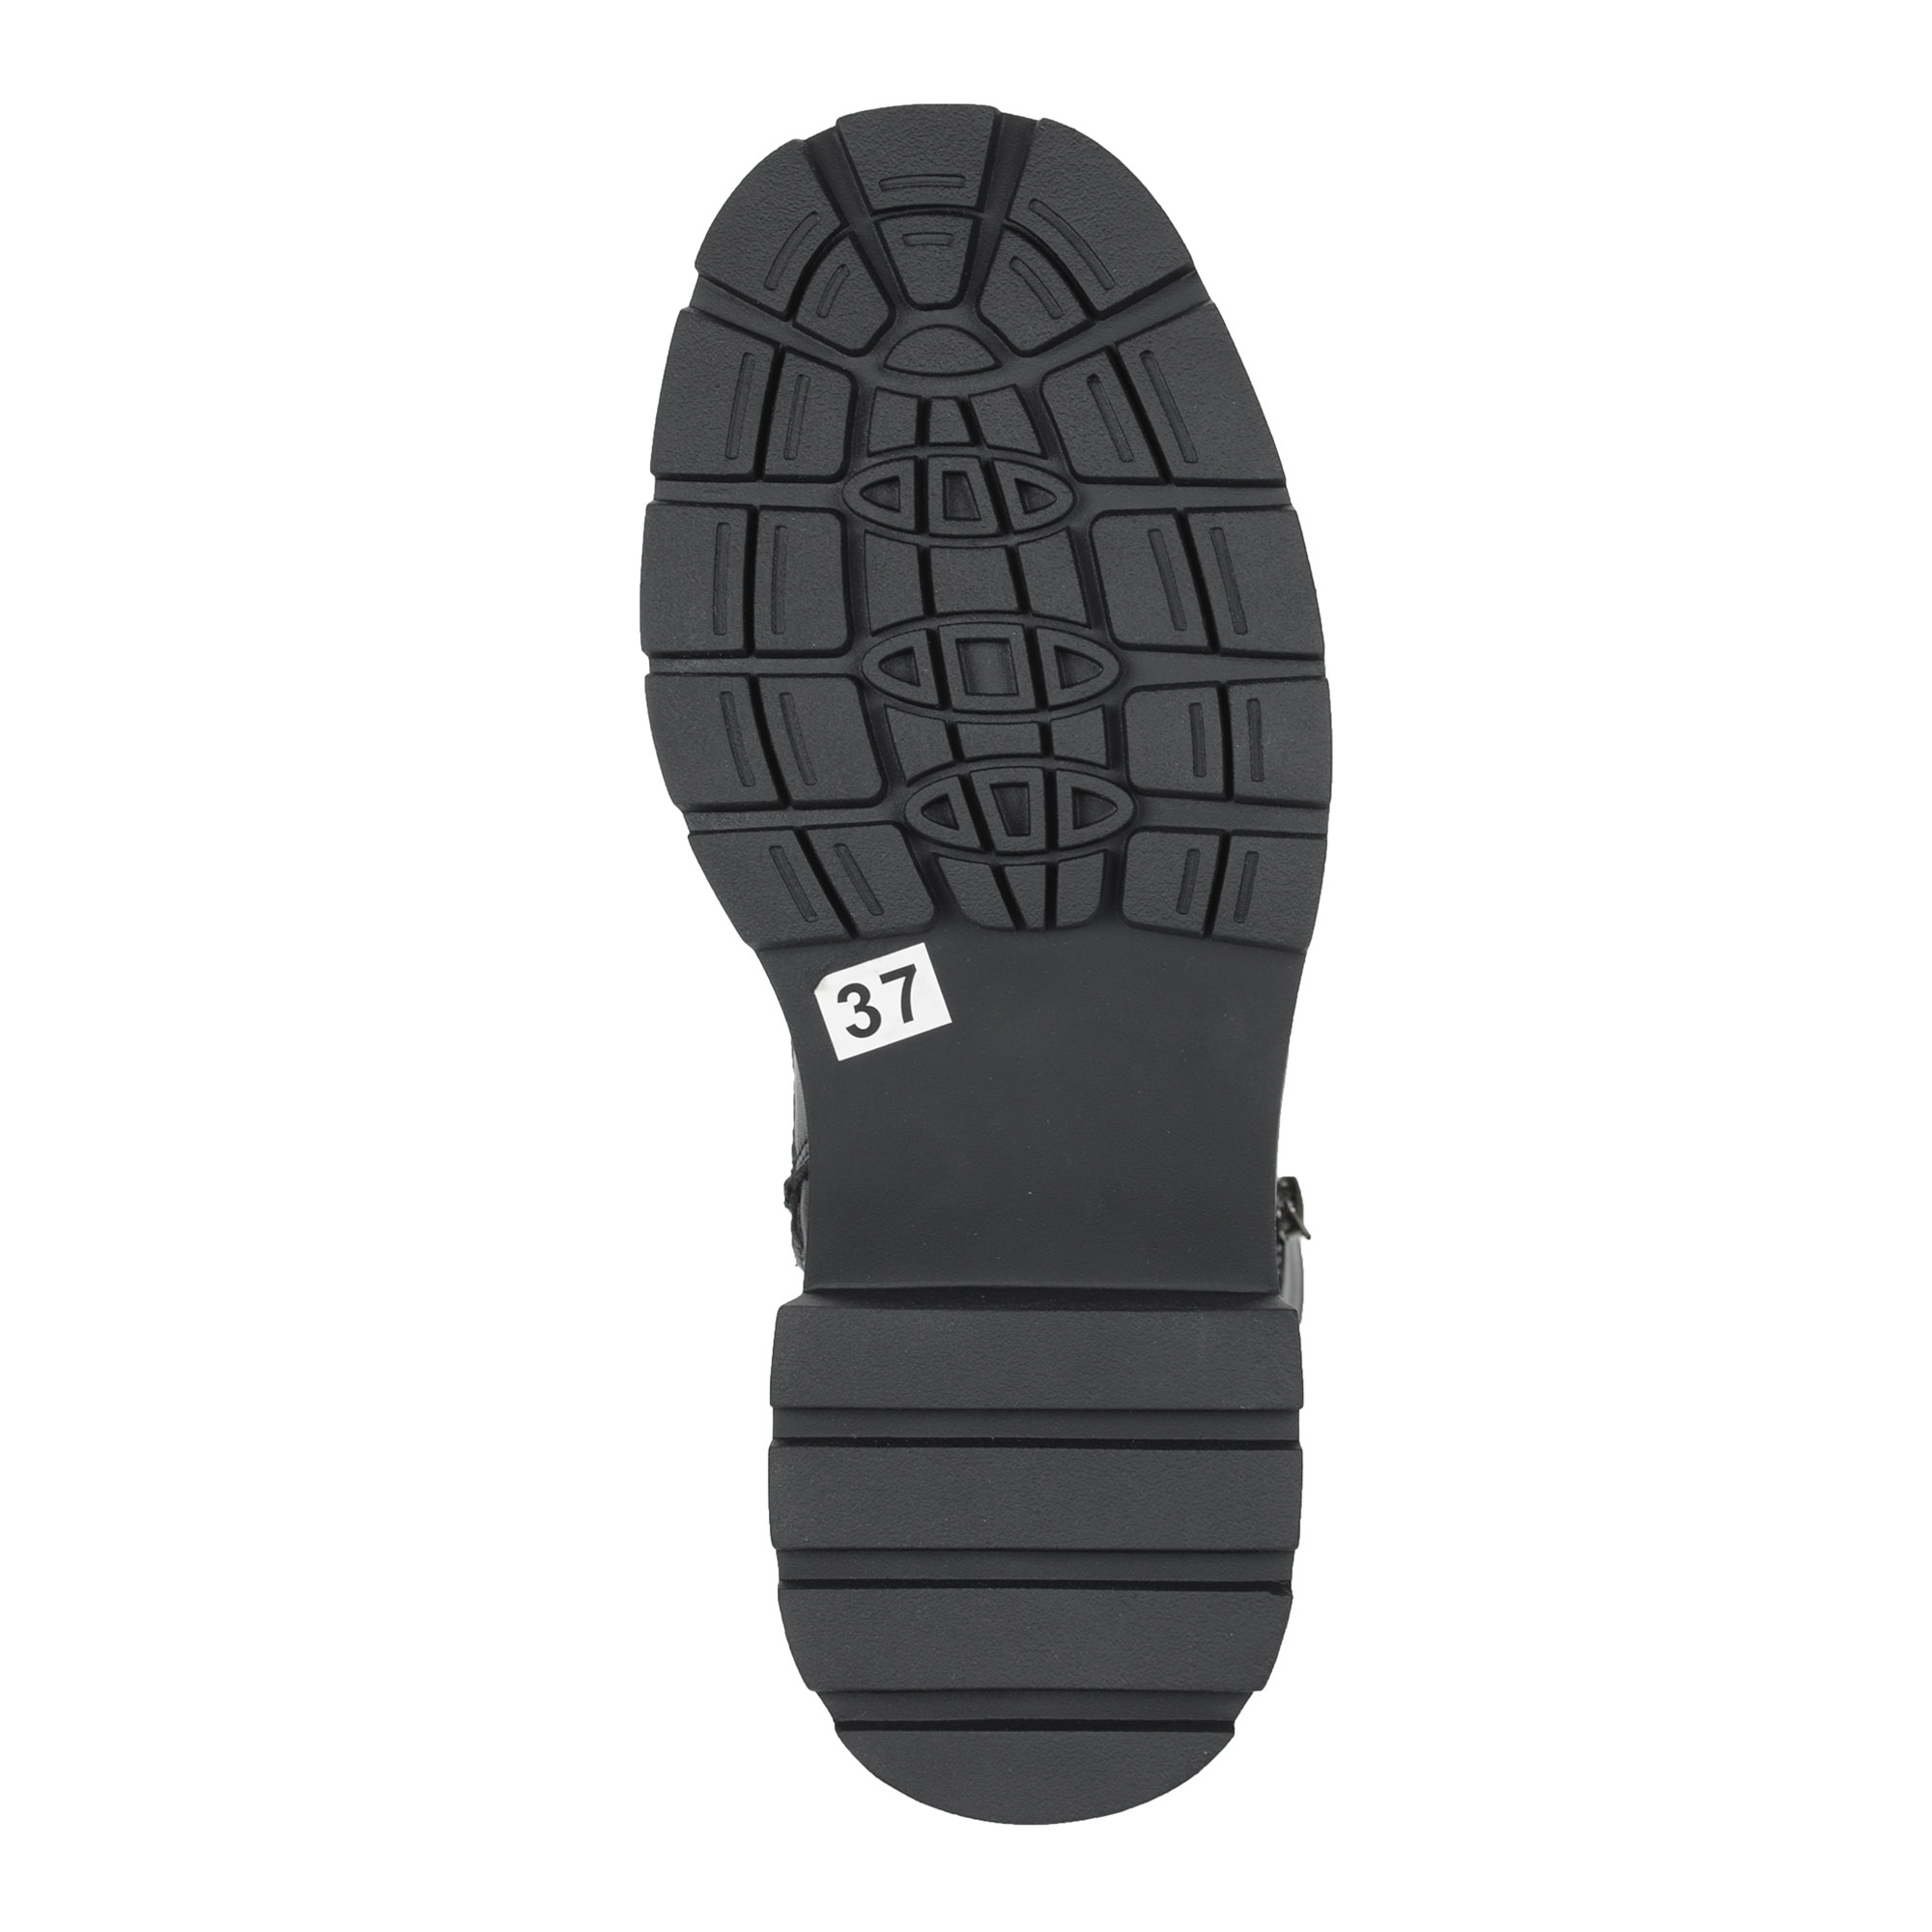 фото Черные ботинки из кожи на шнурках на подкладке из экошерсти на утолщенной подошве keddo